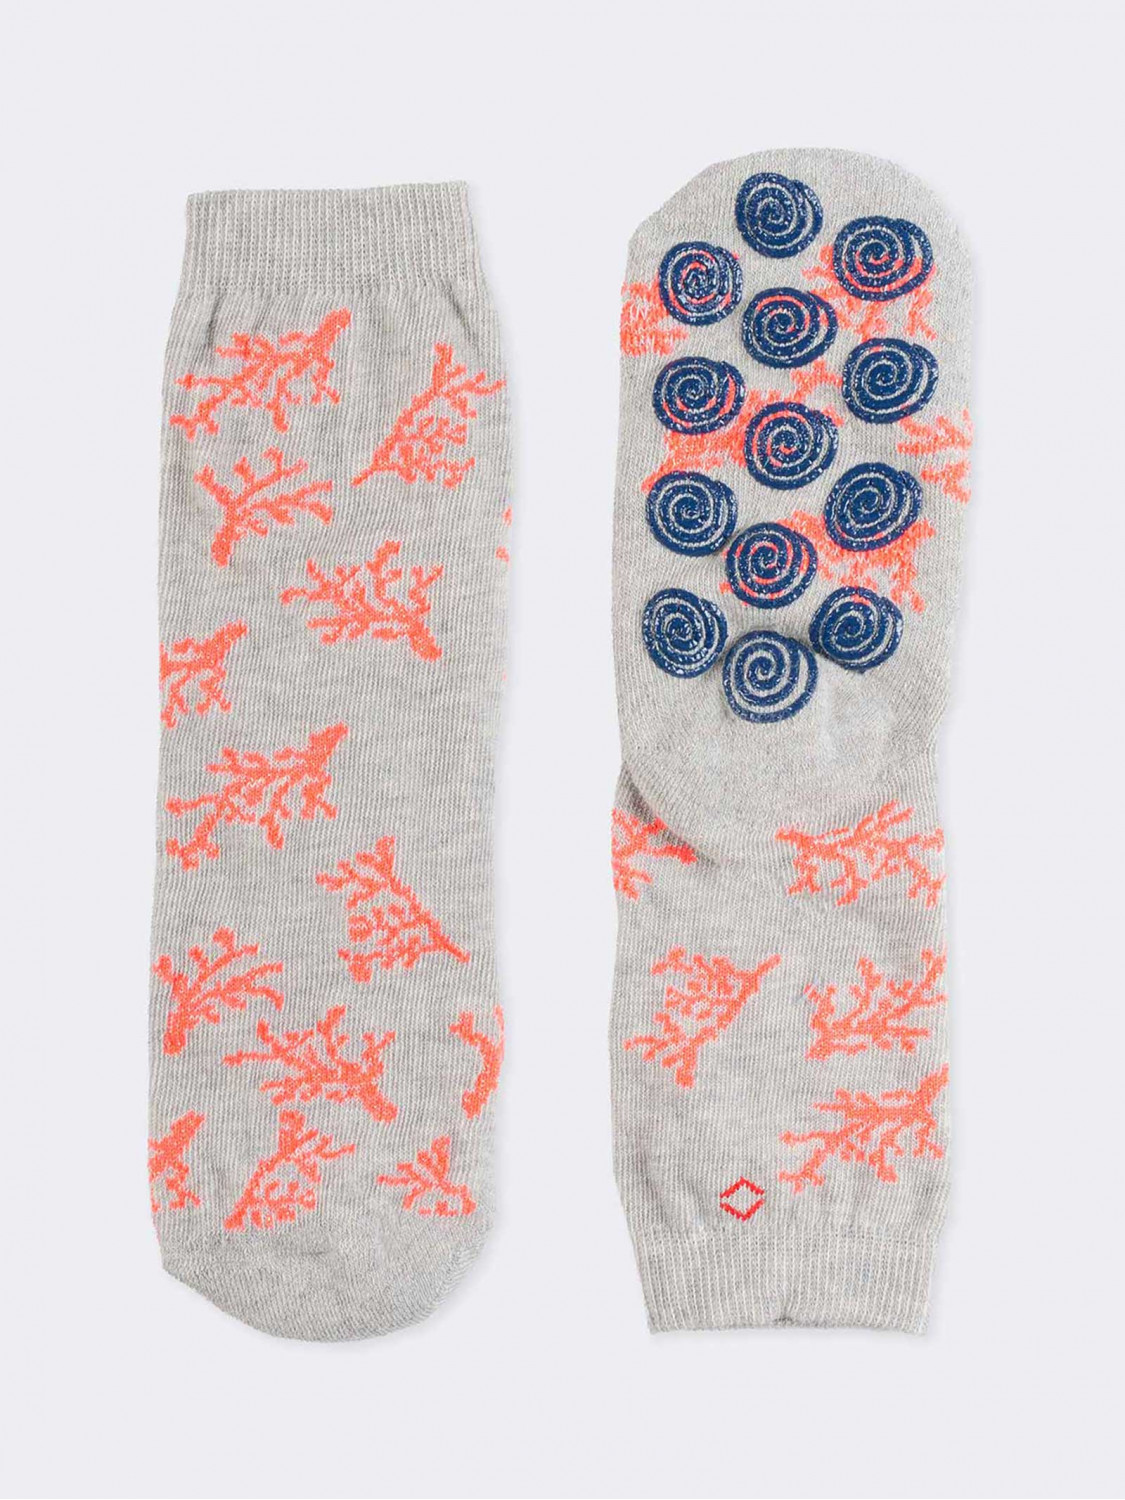 Anti-slid Kids Corals pattern socks